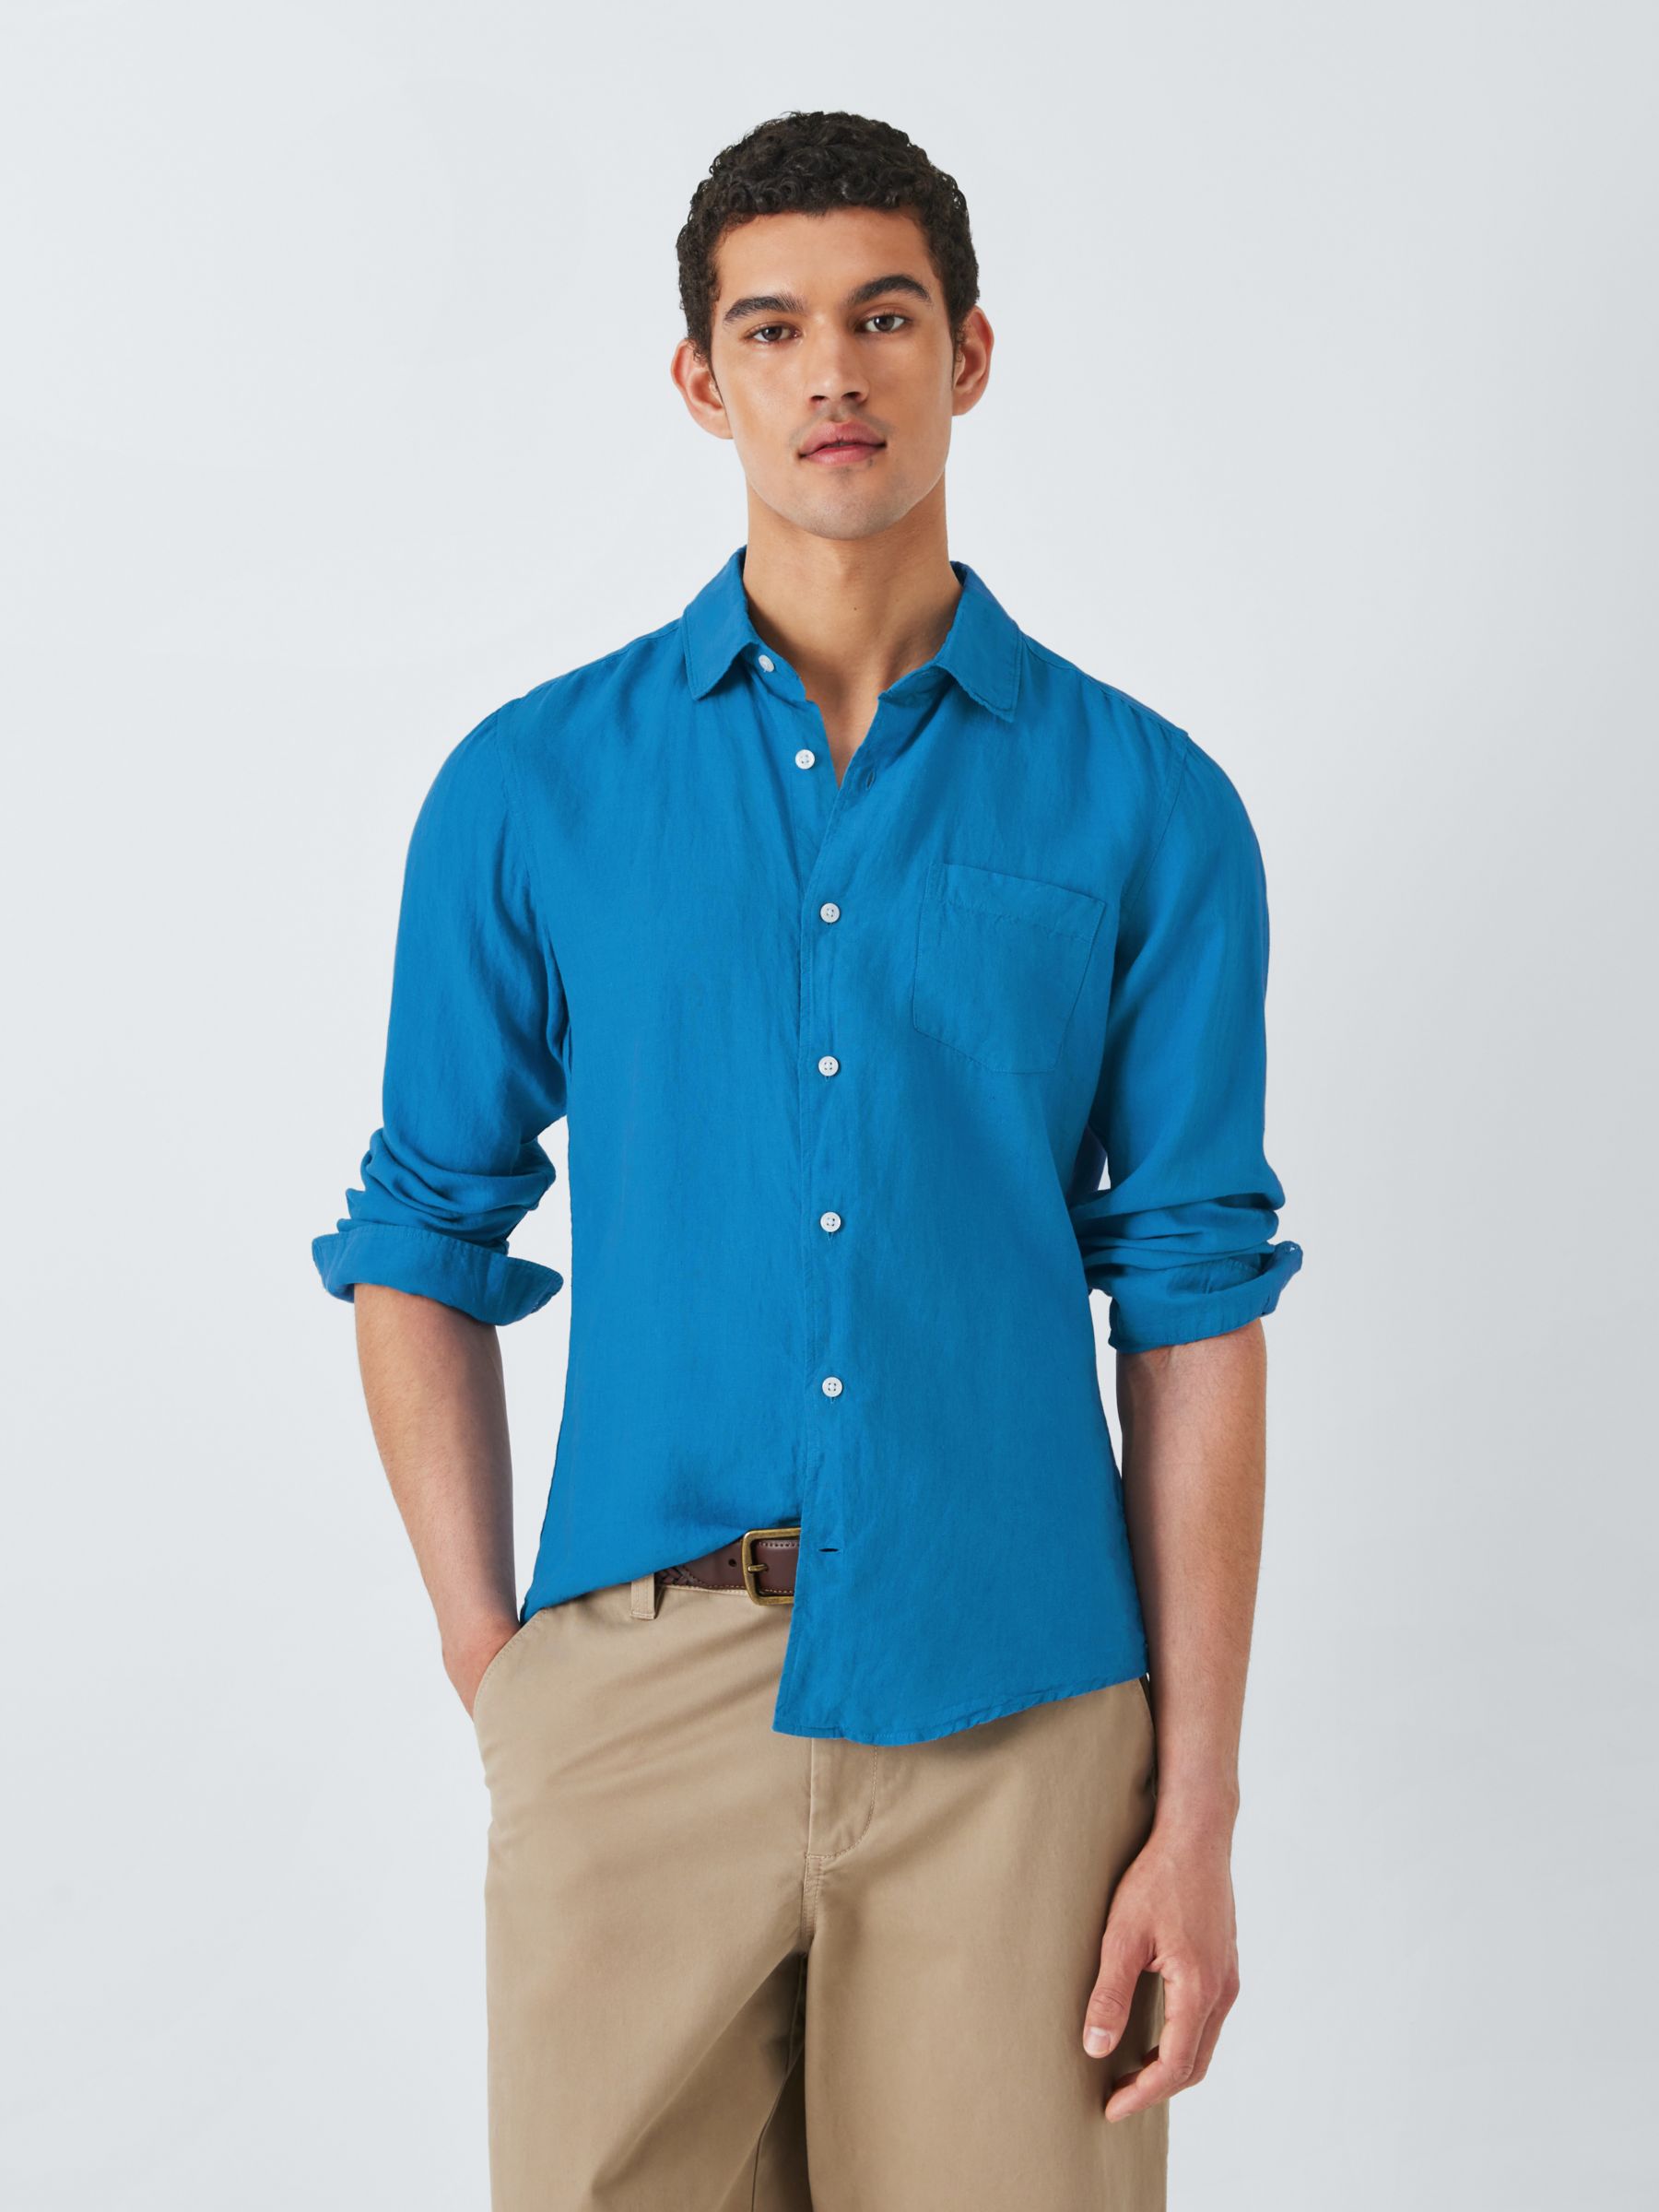 John Lewis Linen Long Sleeve Shirt, Parisian Blue, S